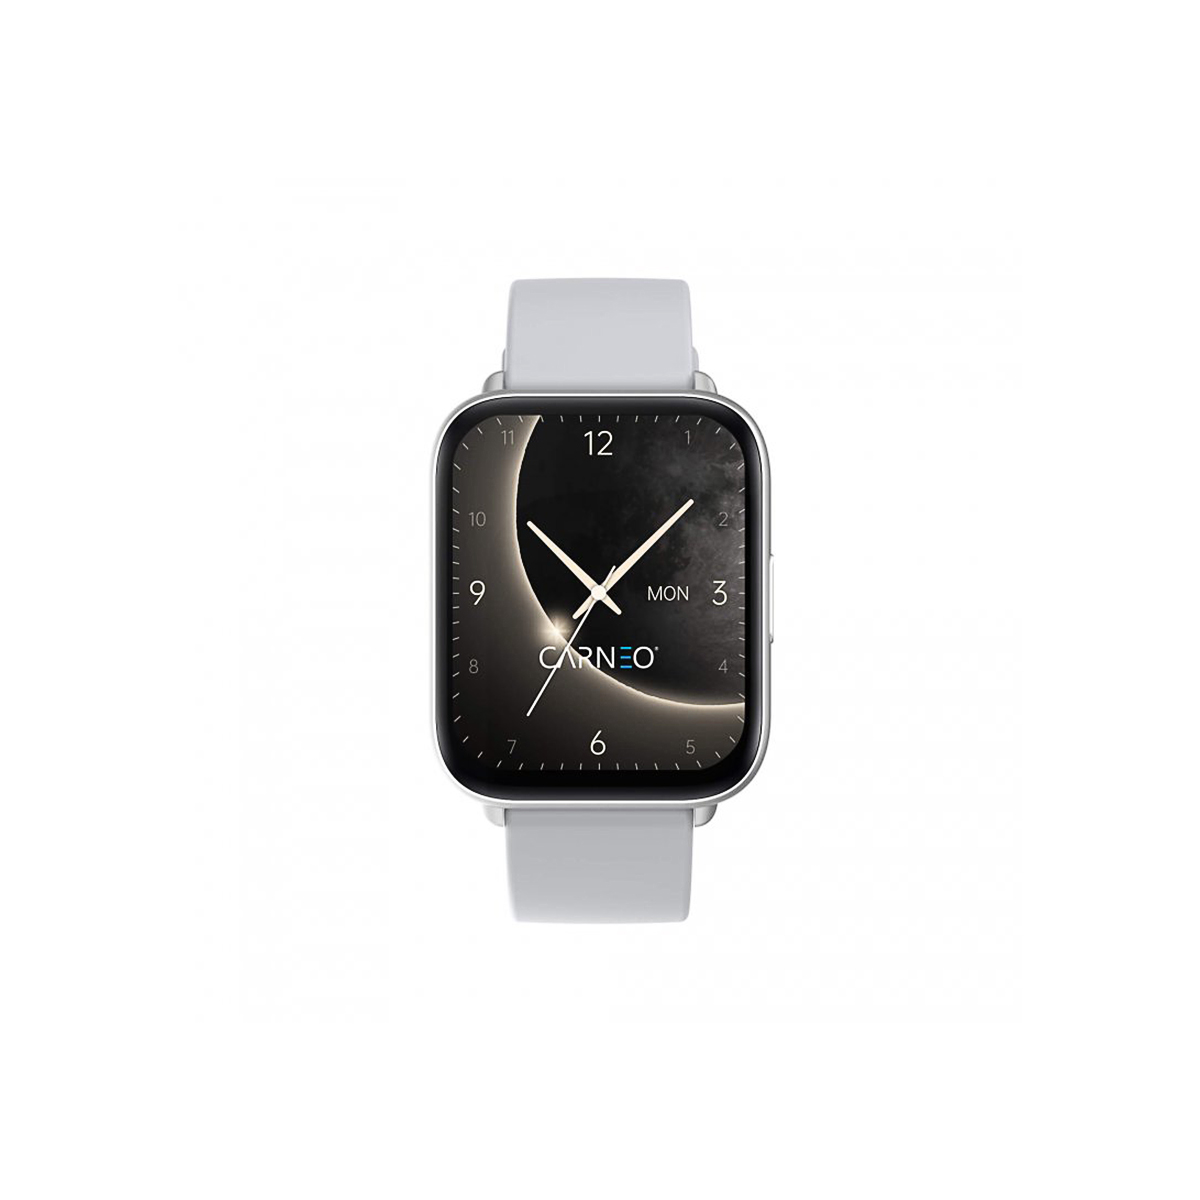 CARNEO Artemis HR+ Silber Smartwatch, 155-235 mm, silver